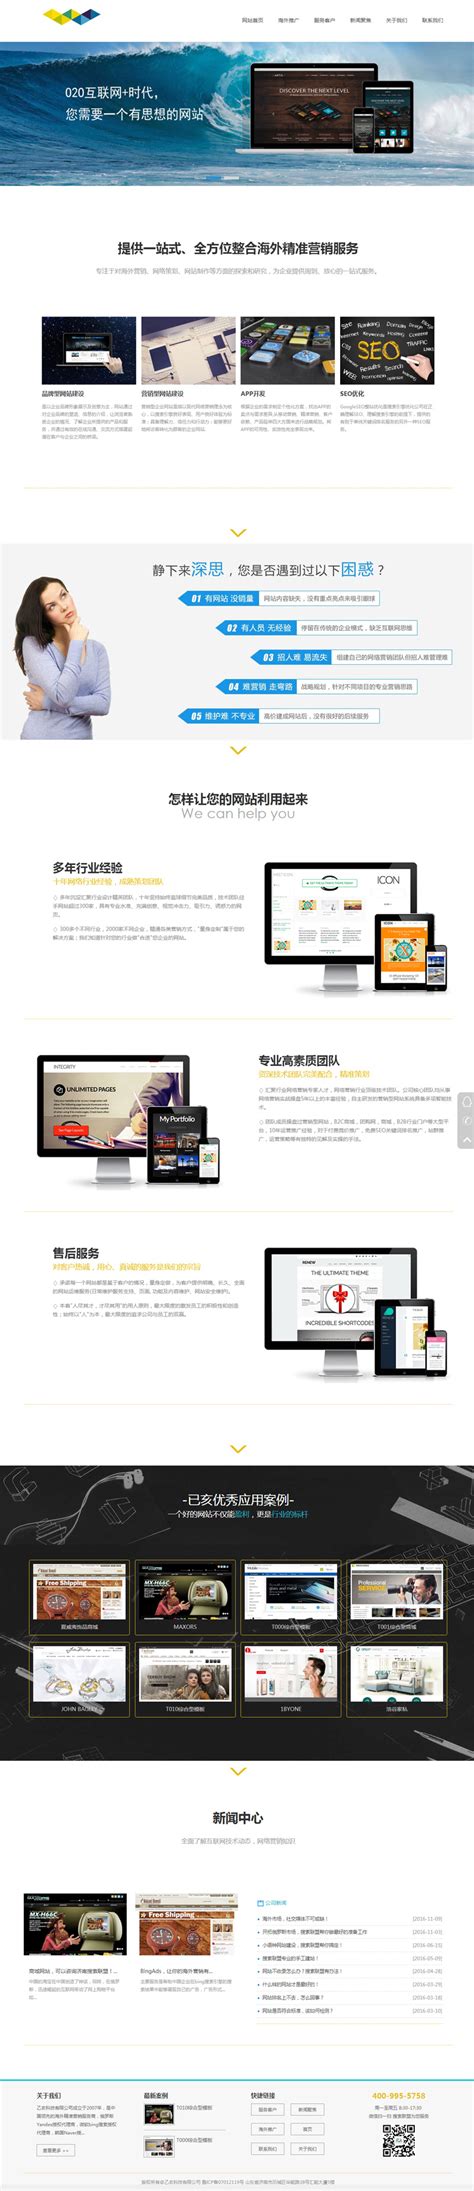 广金云脑平台网站UI设计-环企优站